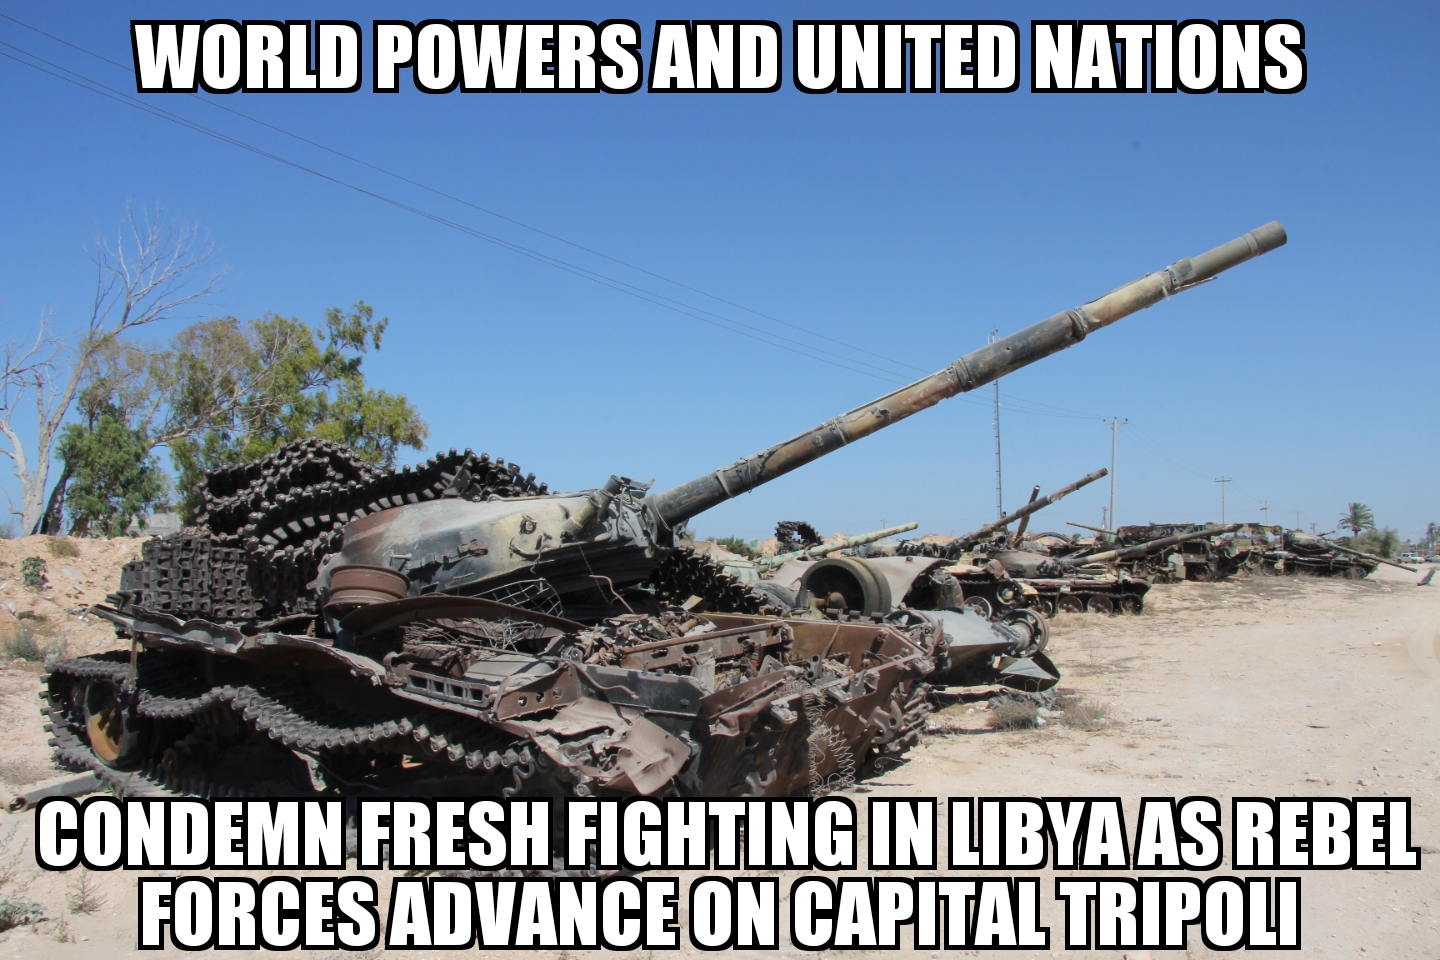 UN, World Powers condemn Libya violence